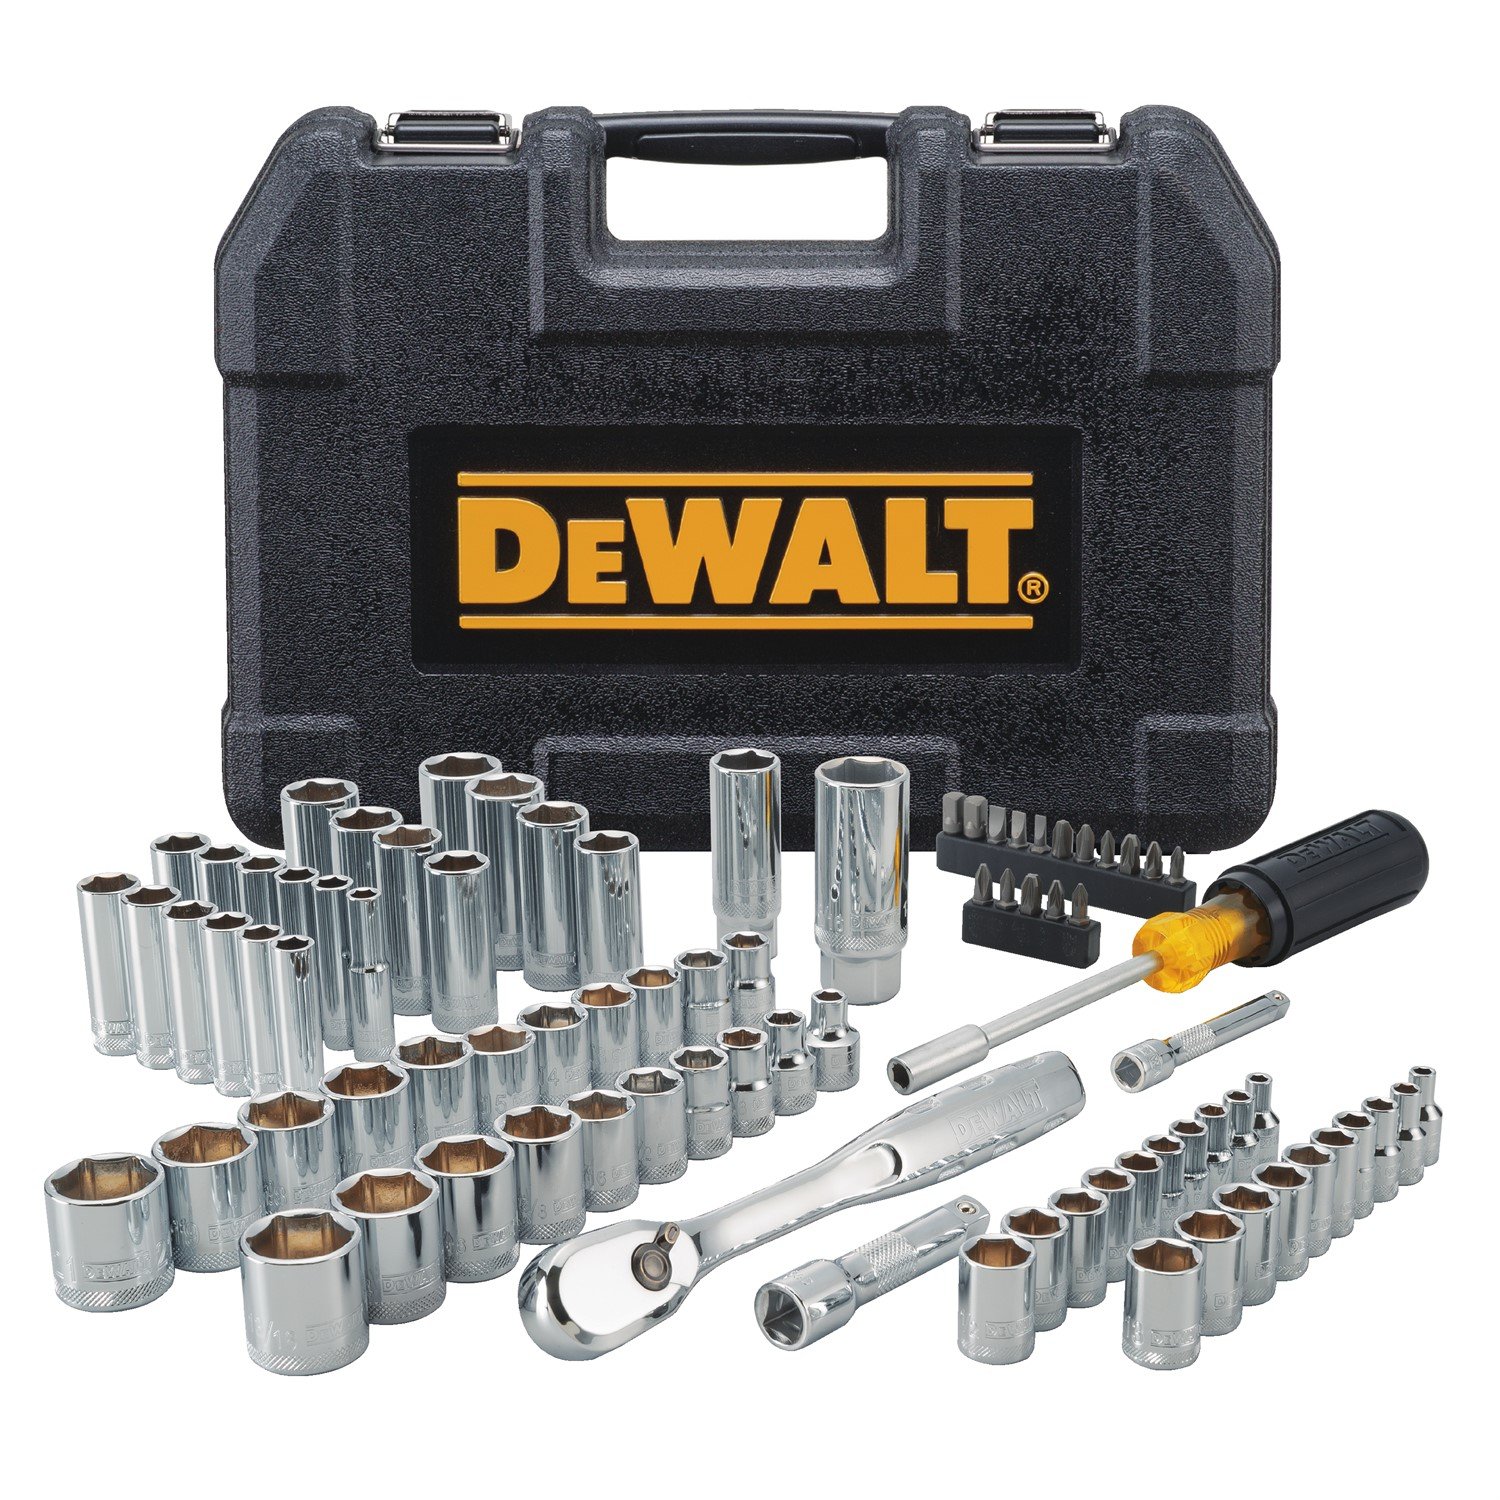 DEWALT Mechanics Tool Set, 84-Piece.